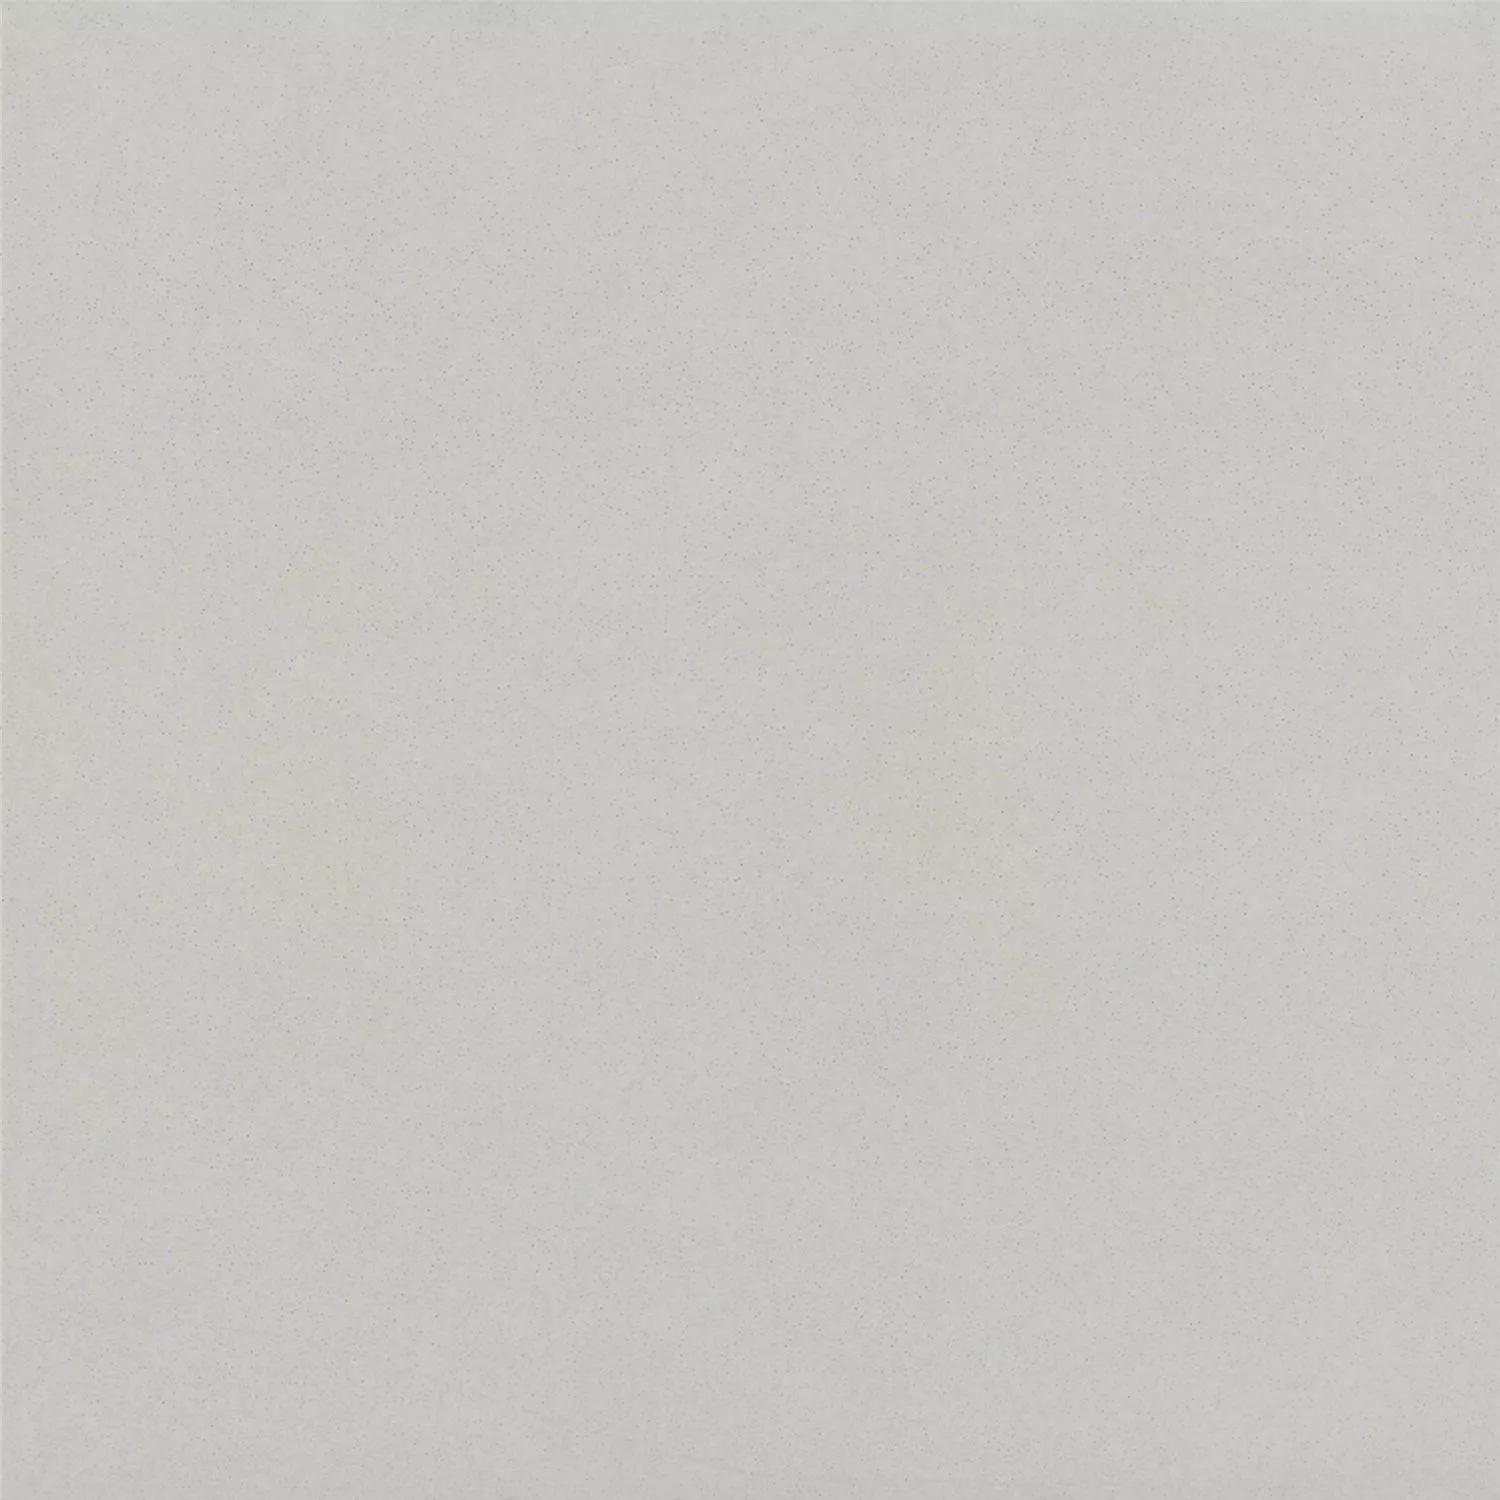 Όψη Πλακιδίων Tσιμέντου Gotik Πλακάκι Bάσης Ασπρο 22,3x22,3cm